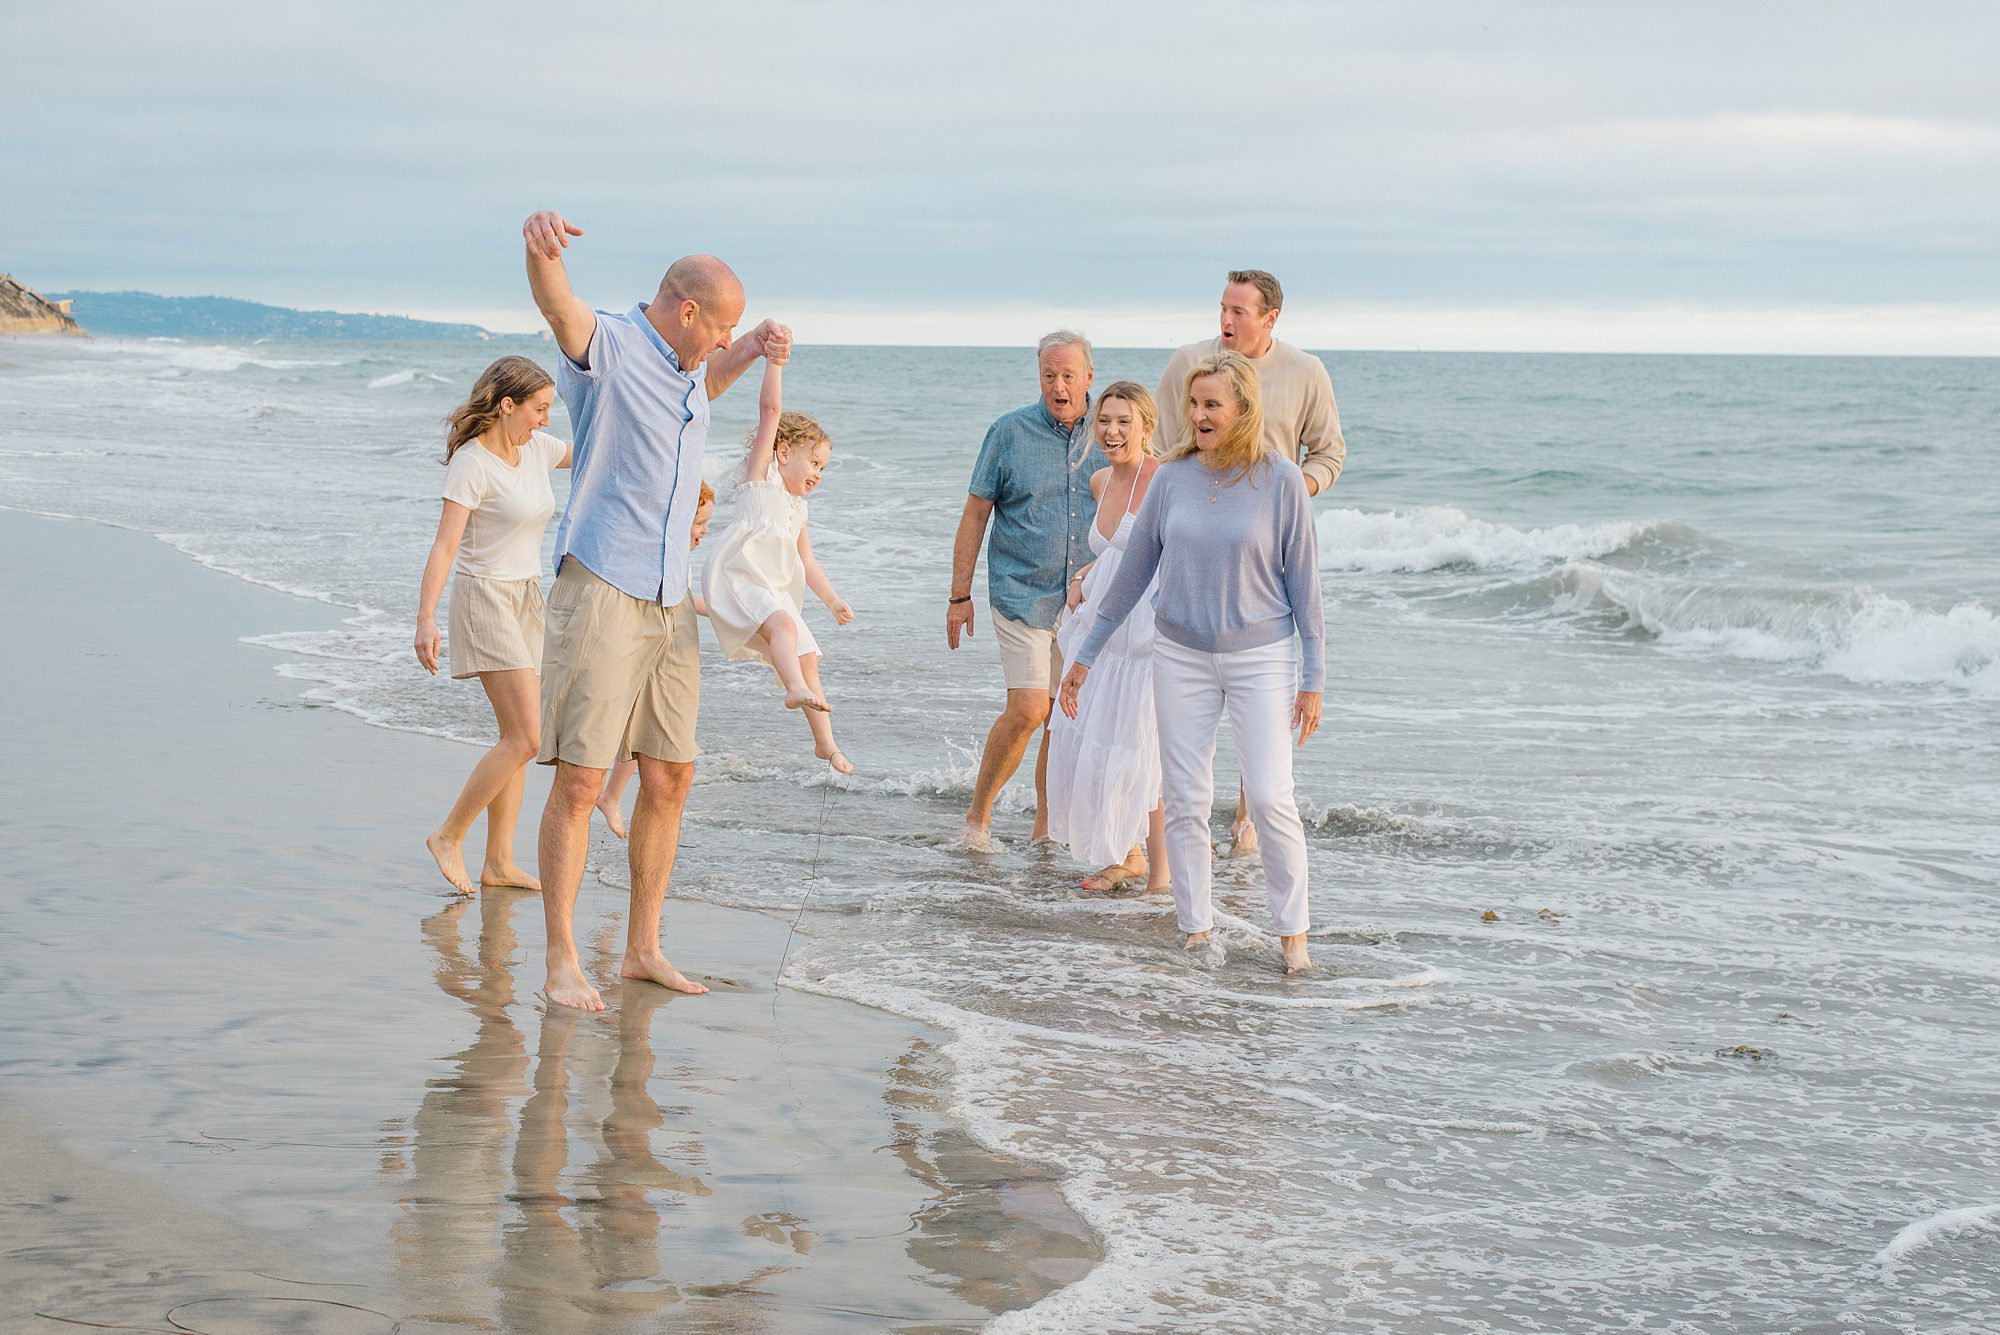 San Diego family photographer Leigh Castelli captures extended family on the beach